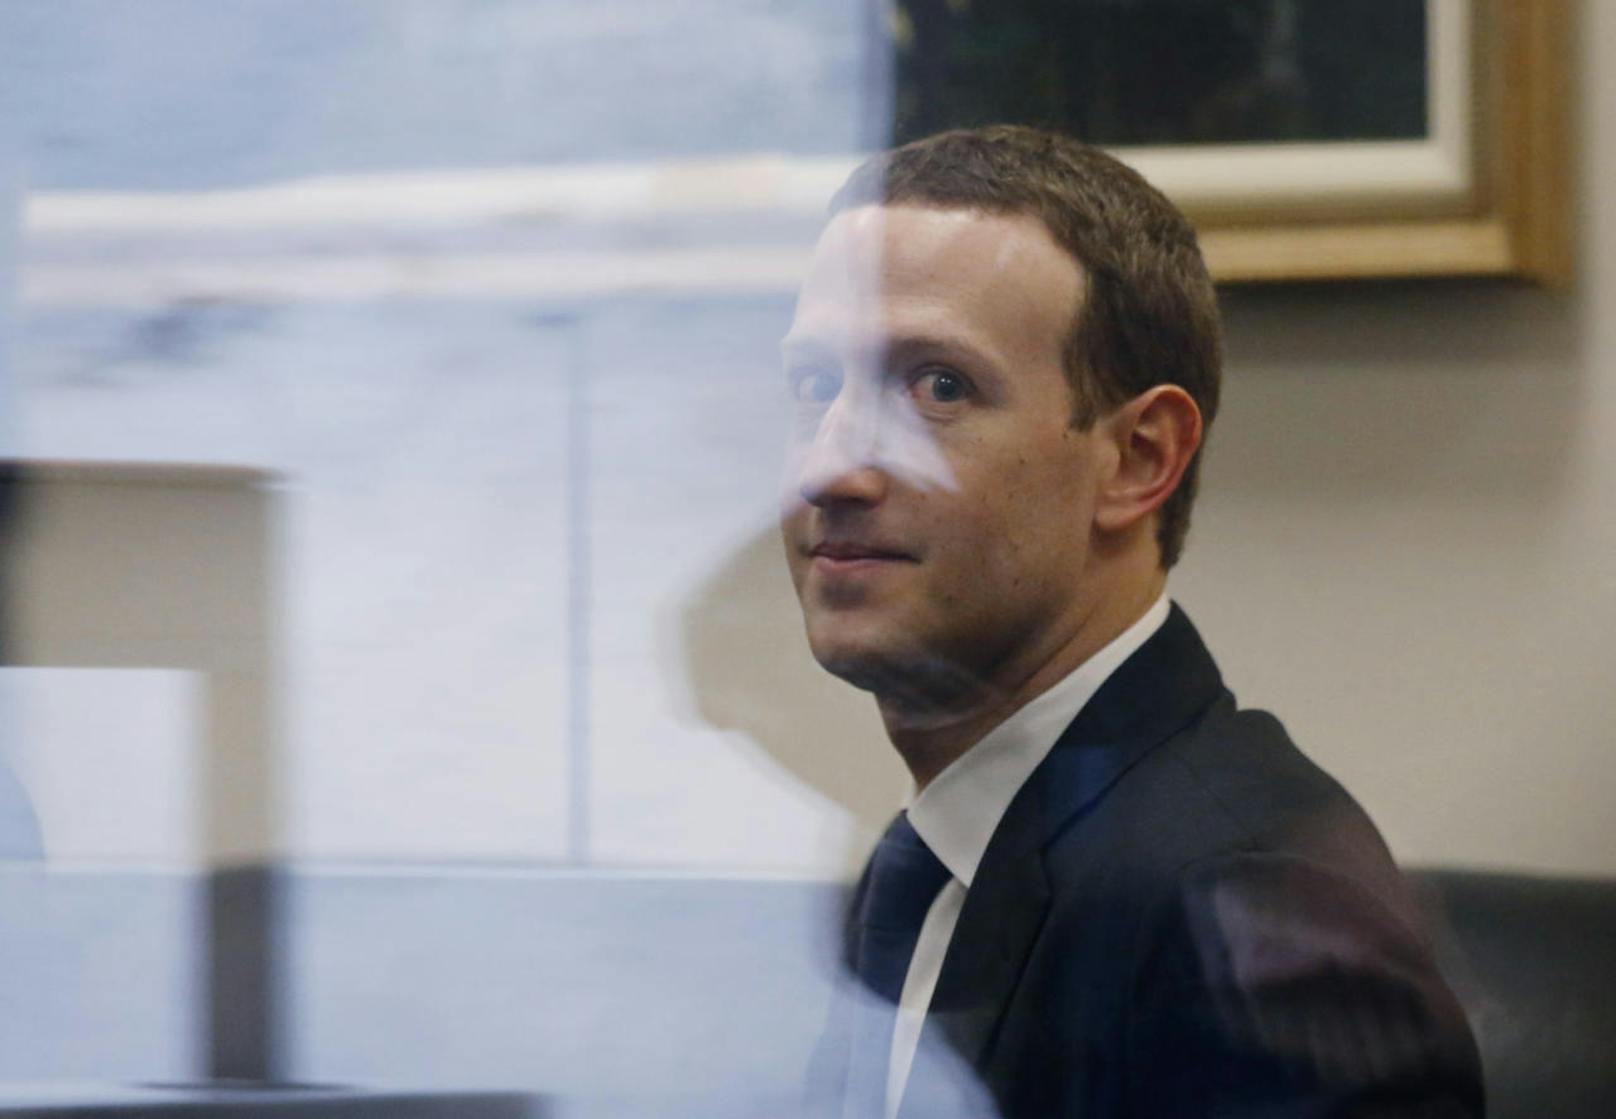 Facebook-Chef Mark Zuckerberg äußerte sich lange gar nicht zu dem Skandal, sagte dann aber in einer zweitägigen Anhörung vor dem US-Kongress aus.